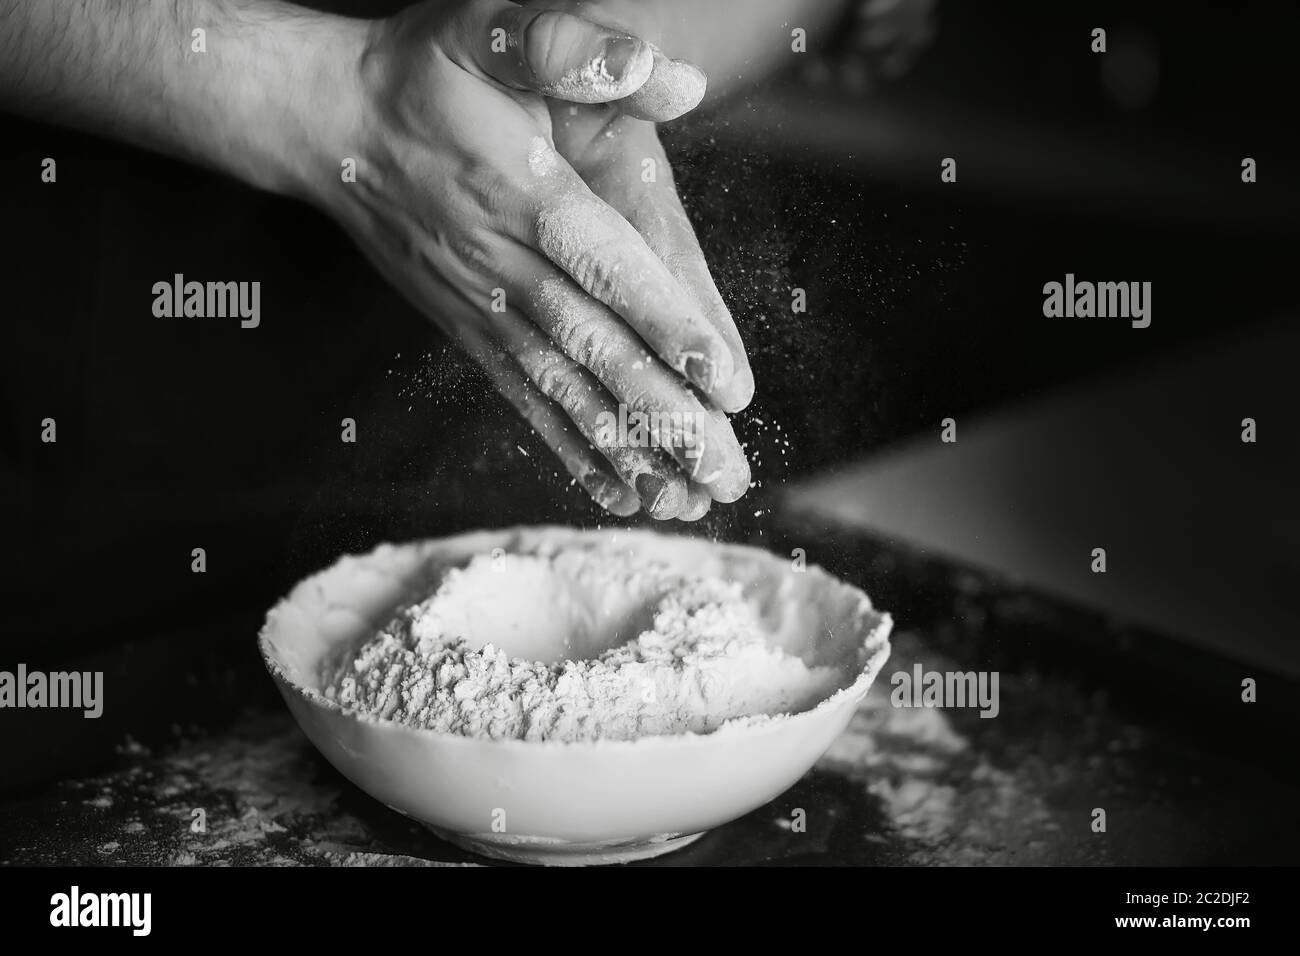 Image en noir et blanc du processus de cuisson de la pâte maison. Le cuisinier mélange la farine avec les autres ingrédients de l'assiette et secoue la farine Banque D'Images